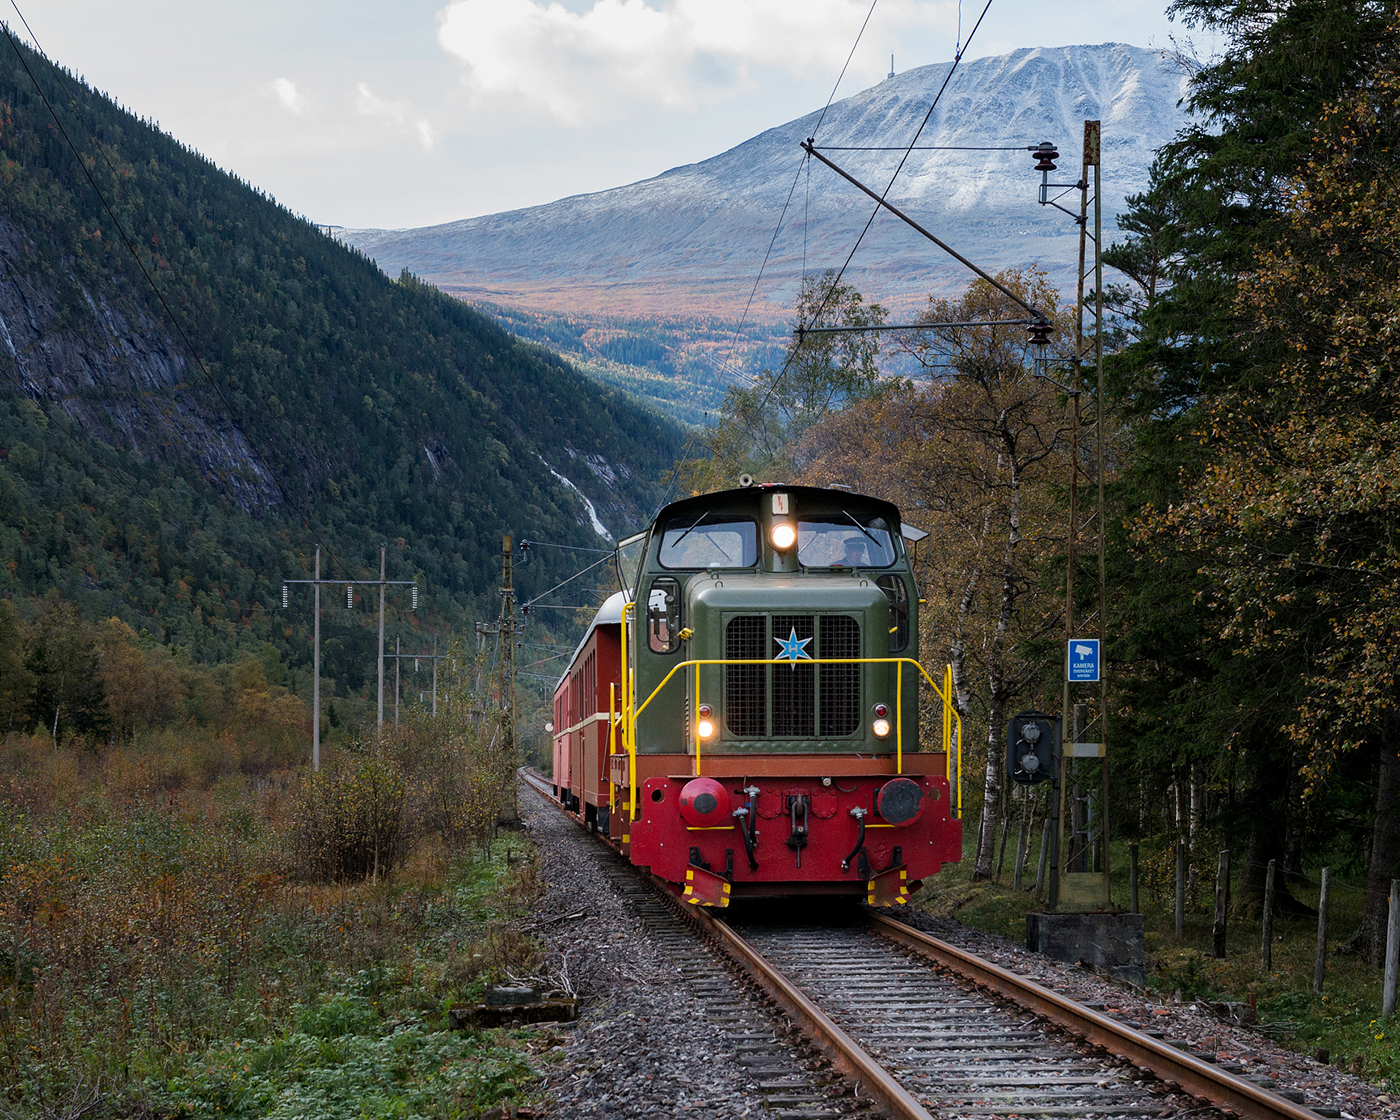 Tog på Rjukanbanen - Gaustadtoppen i bakgrunnen